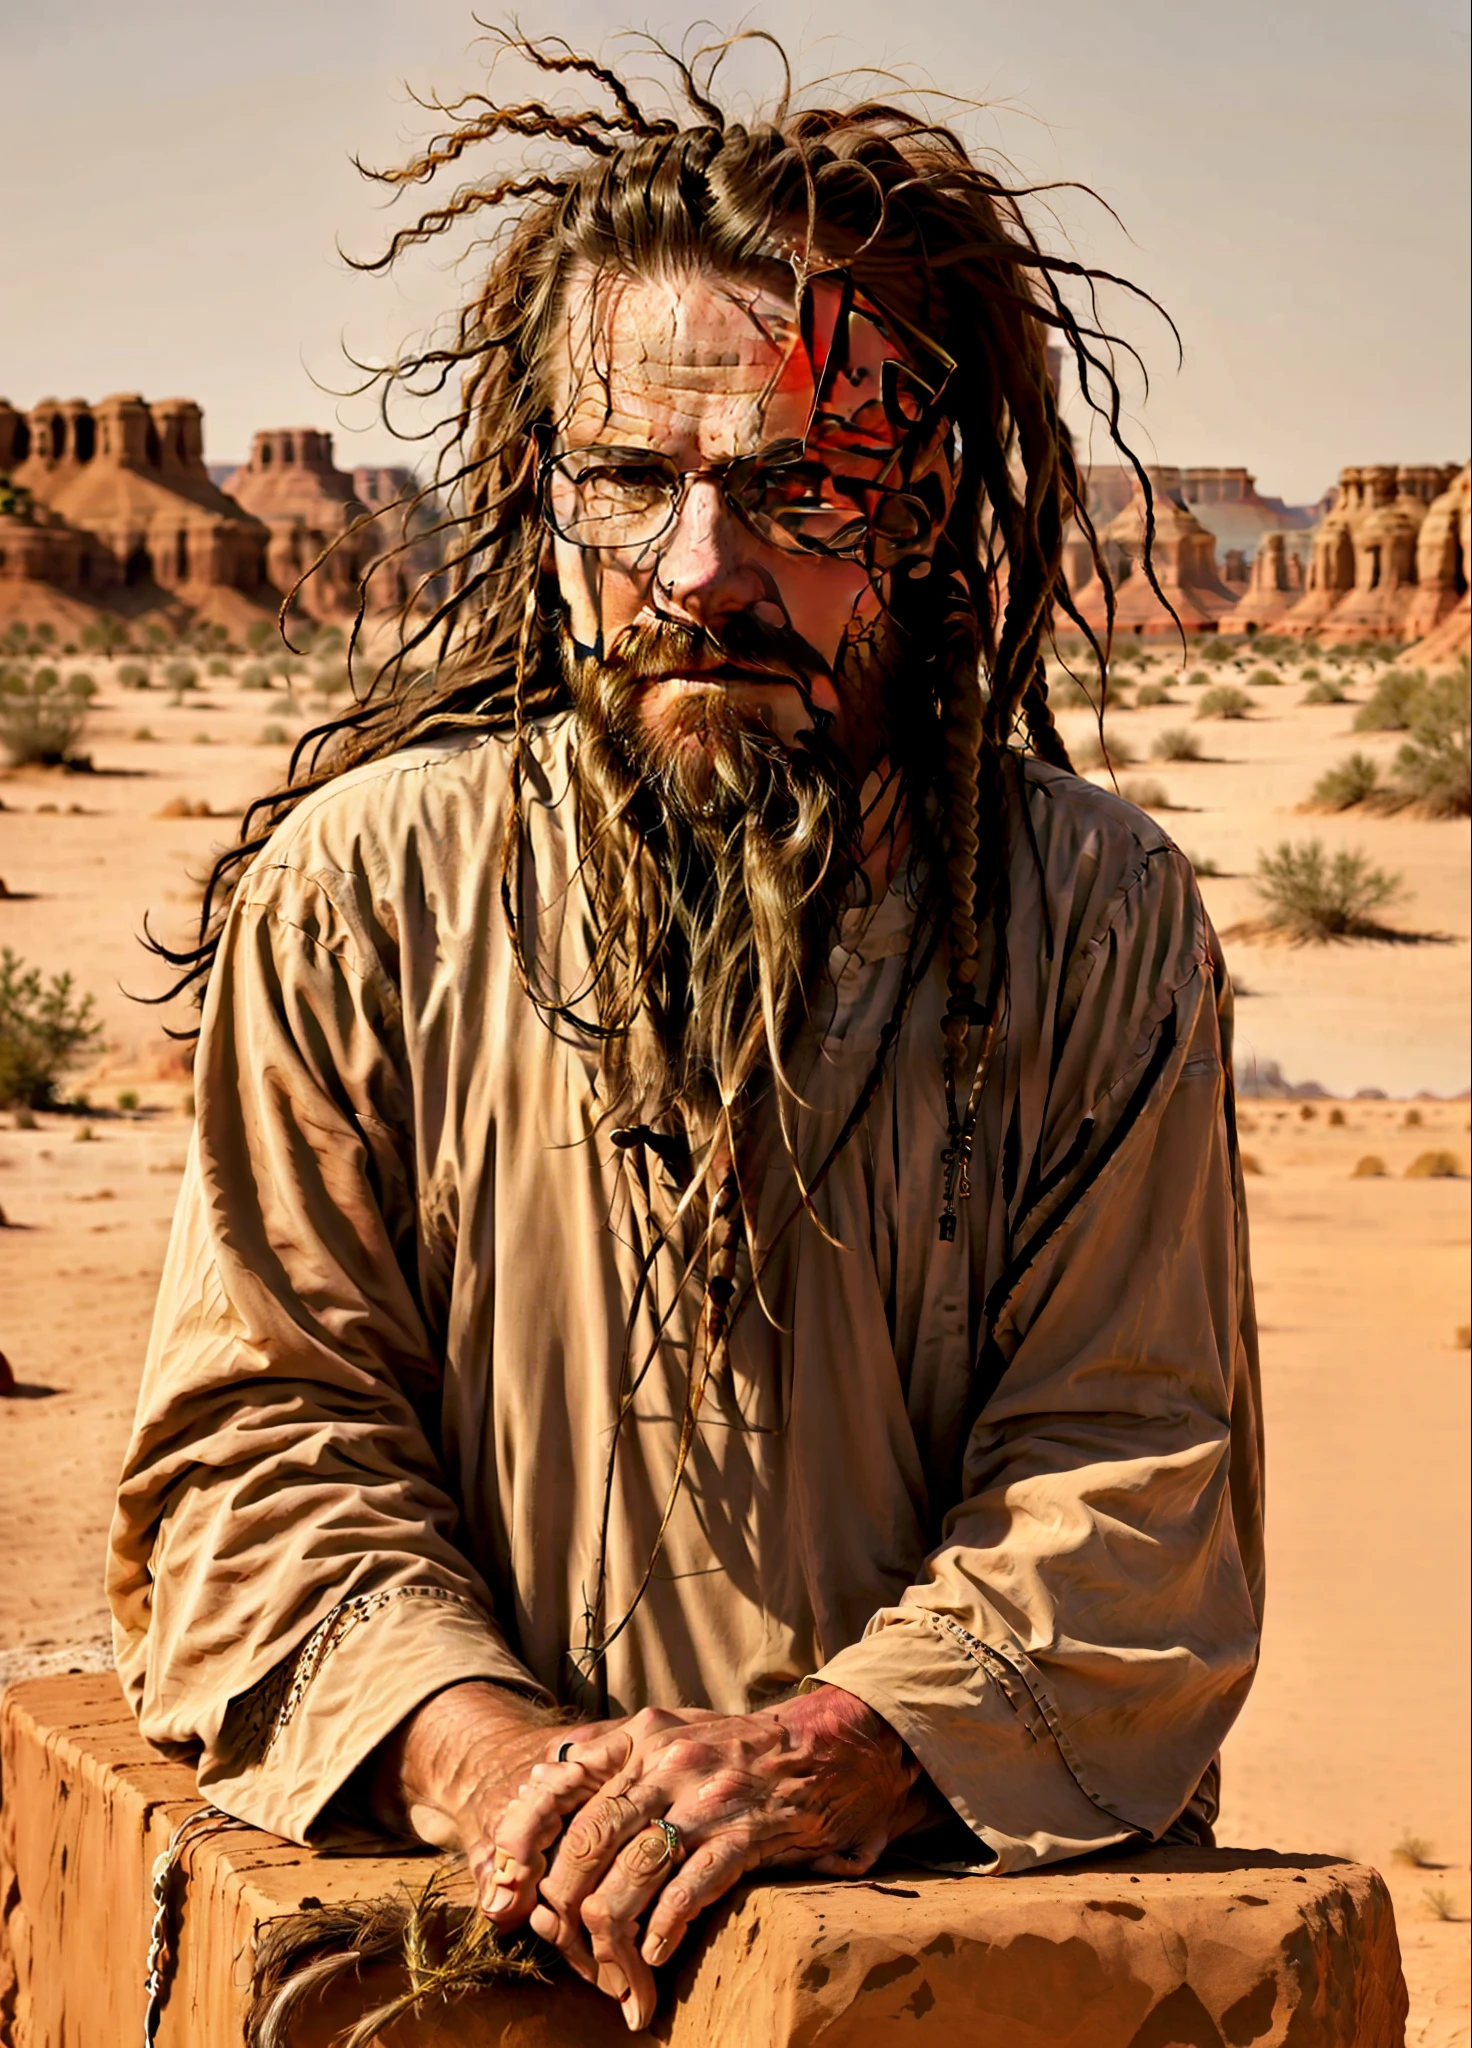 汤姆克鲁斯留着长发和胡子的男人坐在沙漠中的一块岩石上, 长胡子, 很长的白胡子和头发, 非常长的头发, 肖像照, 长辫子, 沙漠游牧民族, 奥齐, 害怕, 长山羊胡, 长长的棕色胡子, 长着脏辫的泥巴, 灵感来自 Martin Schoeller, 触手胡须, 斯特凡·格塞尔